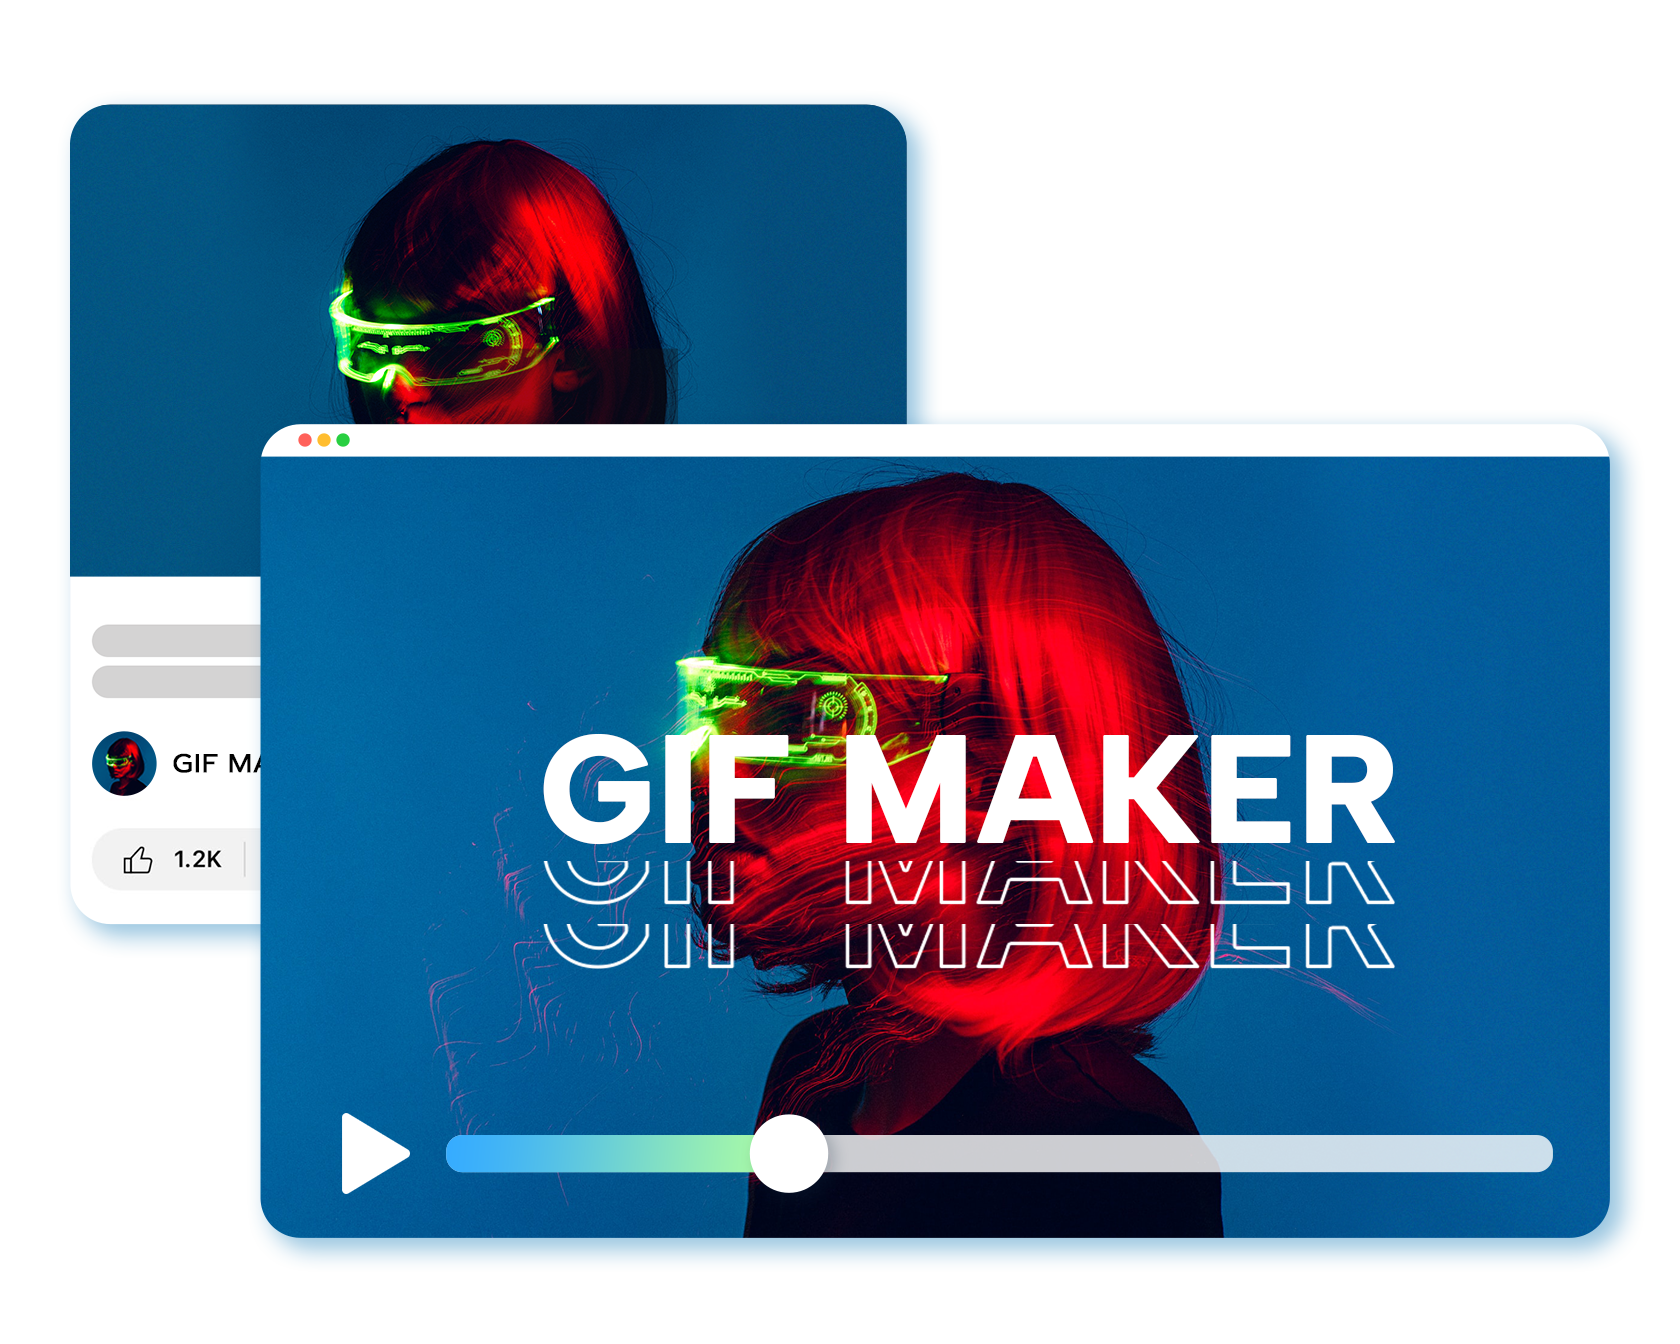 Créateur de GIF pour créer ou convertir des GIF animés